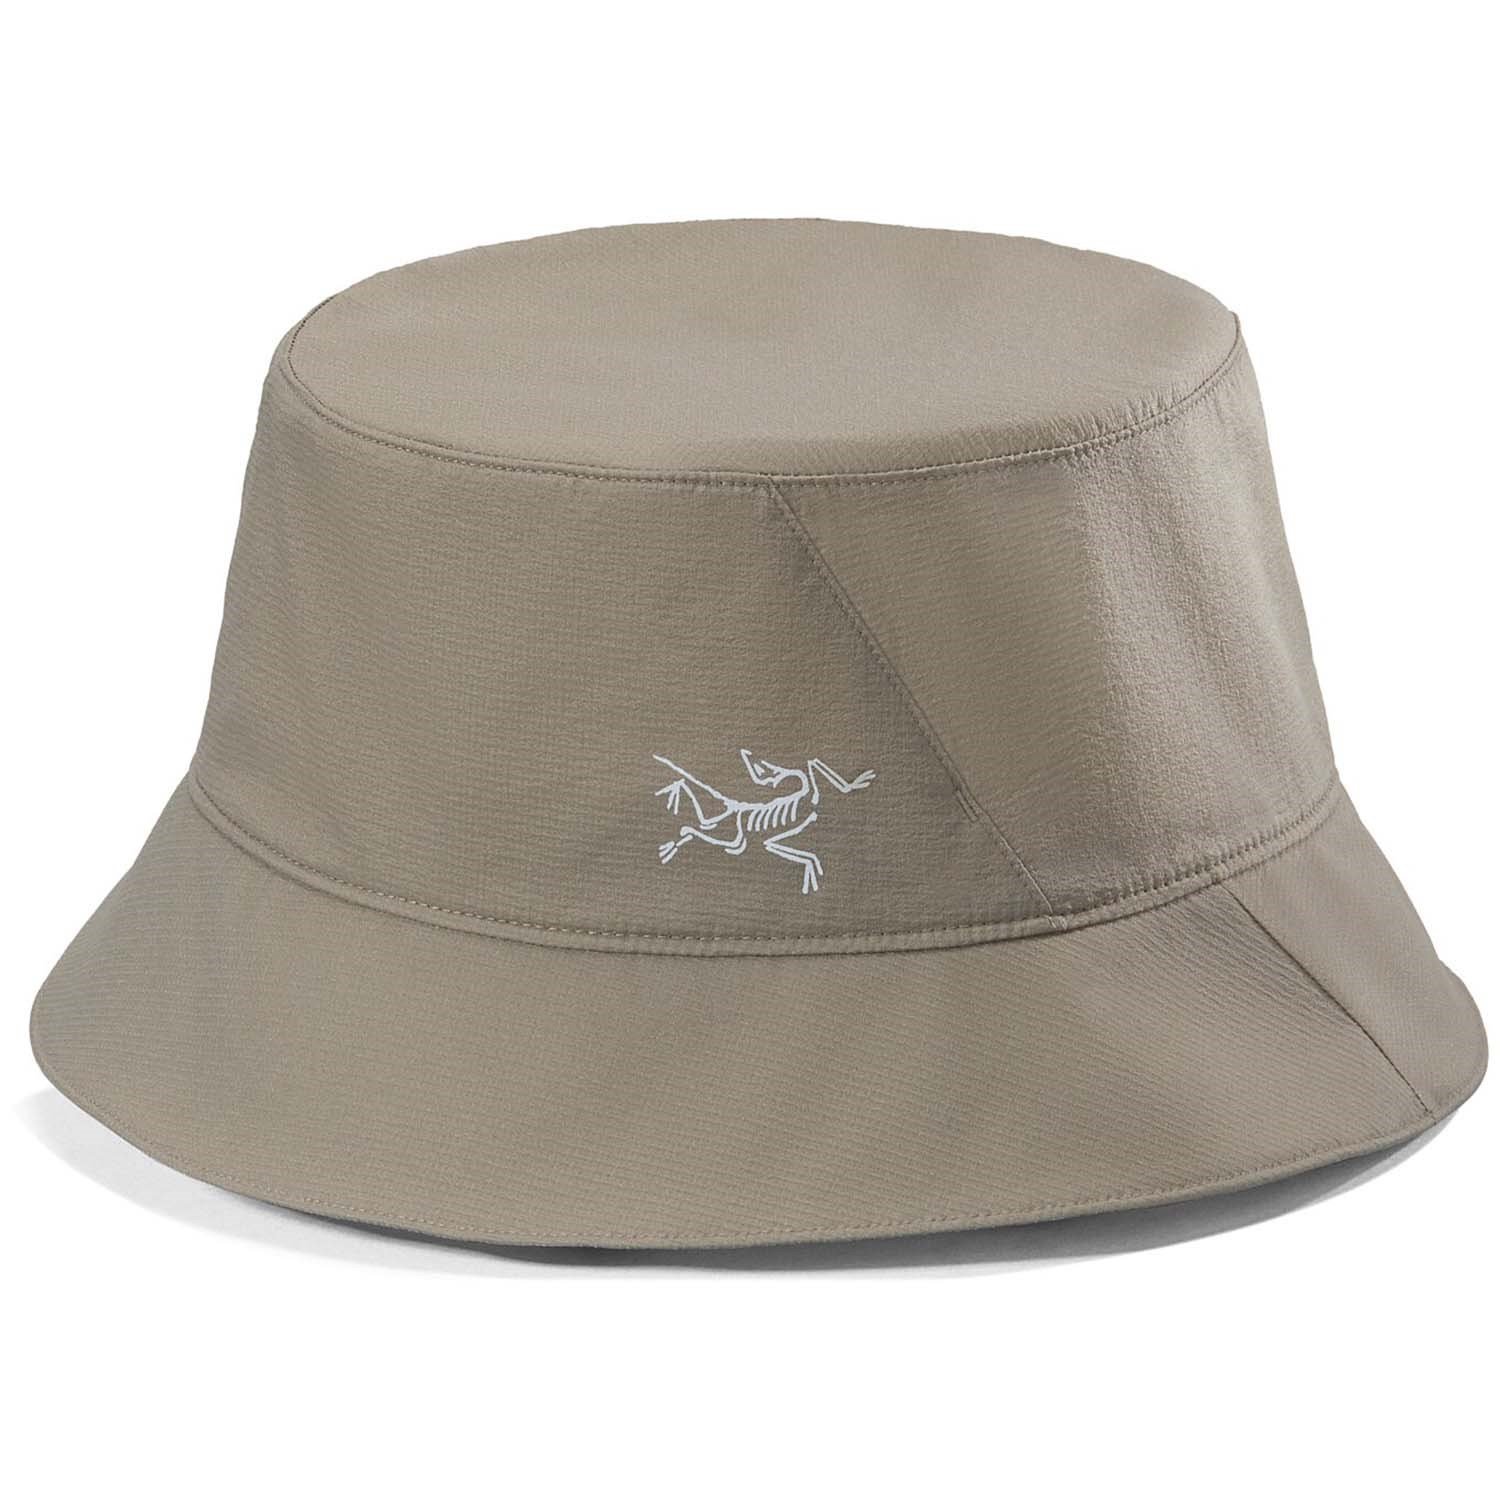 Arc'teryx Aerios Bucket Hat, Forage, Size S/M